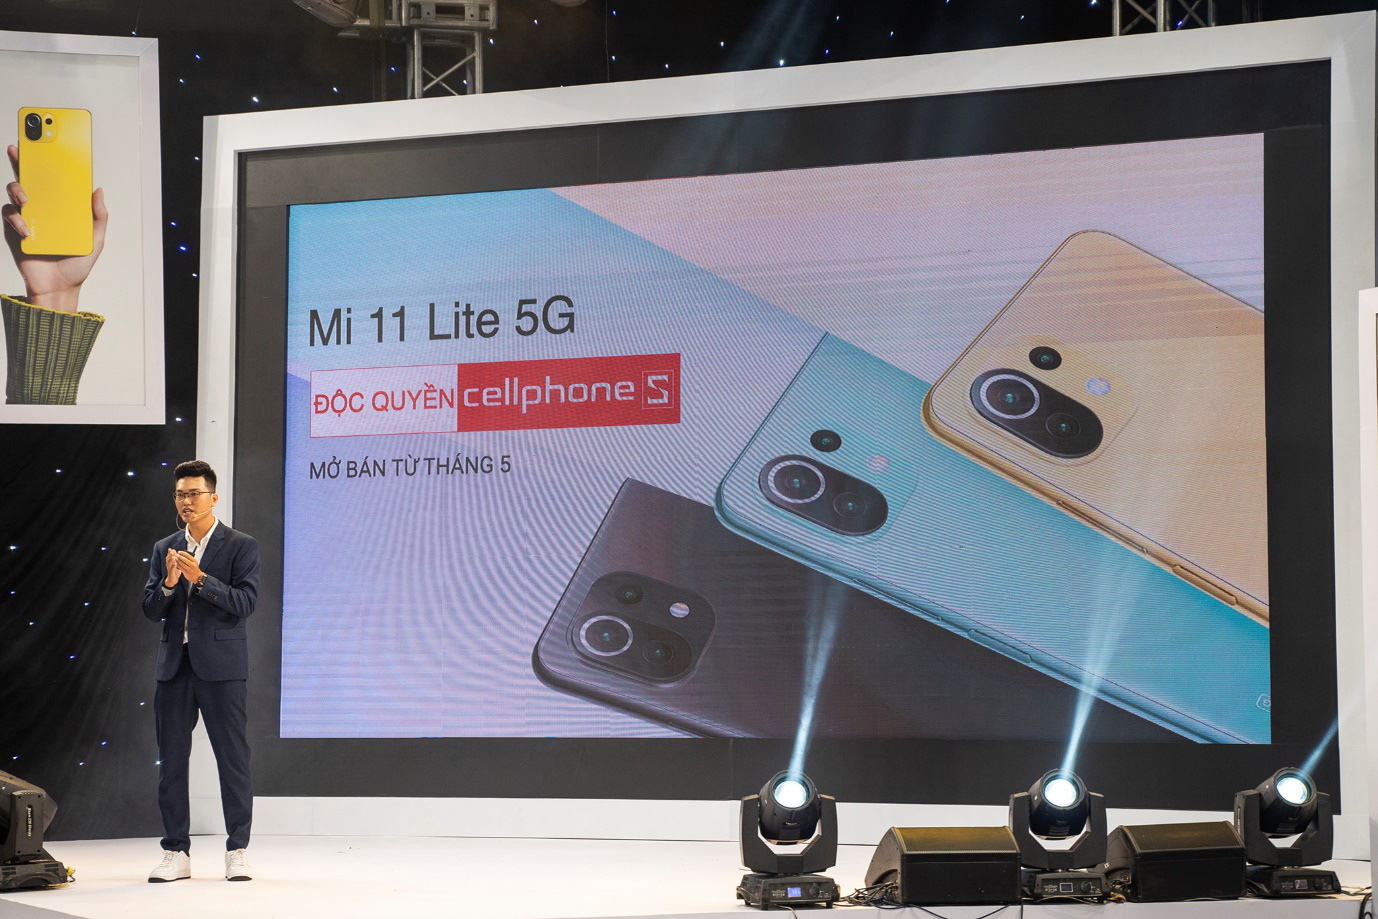 CellphoneS mở bán Xiaomi Mi 11 Lite 5G, siêu phẩm với chip Snap 780 đầu tiên của Xiaomi - Ảnh 4.